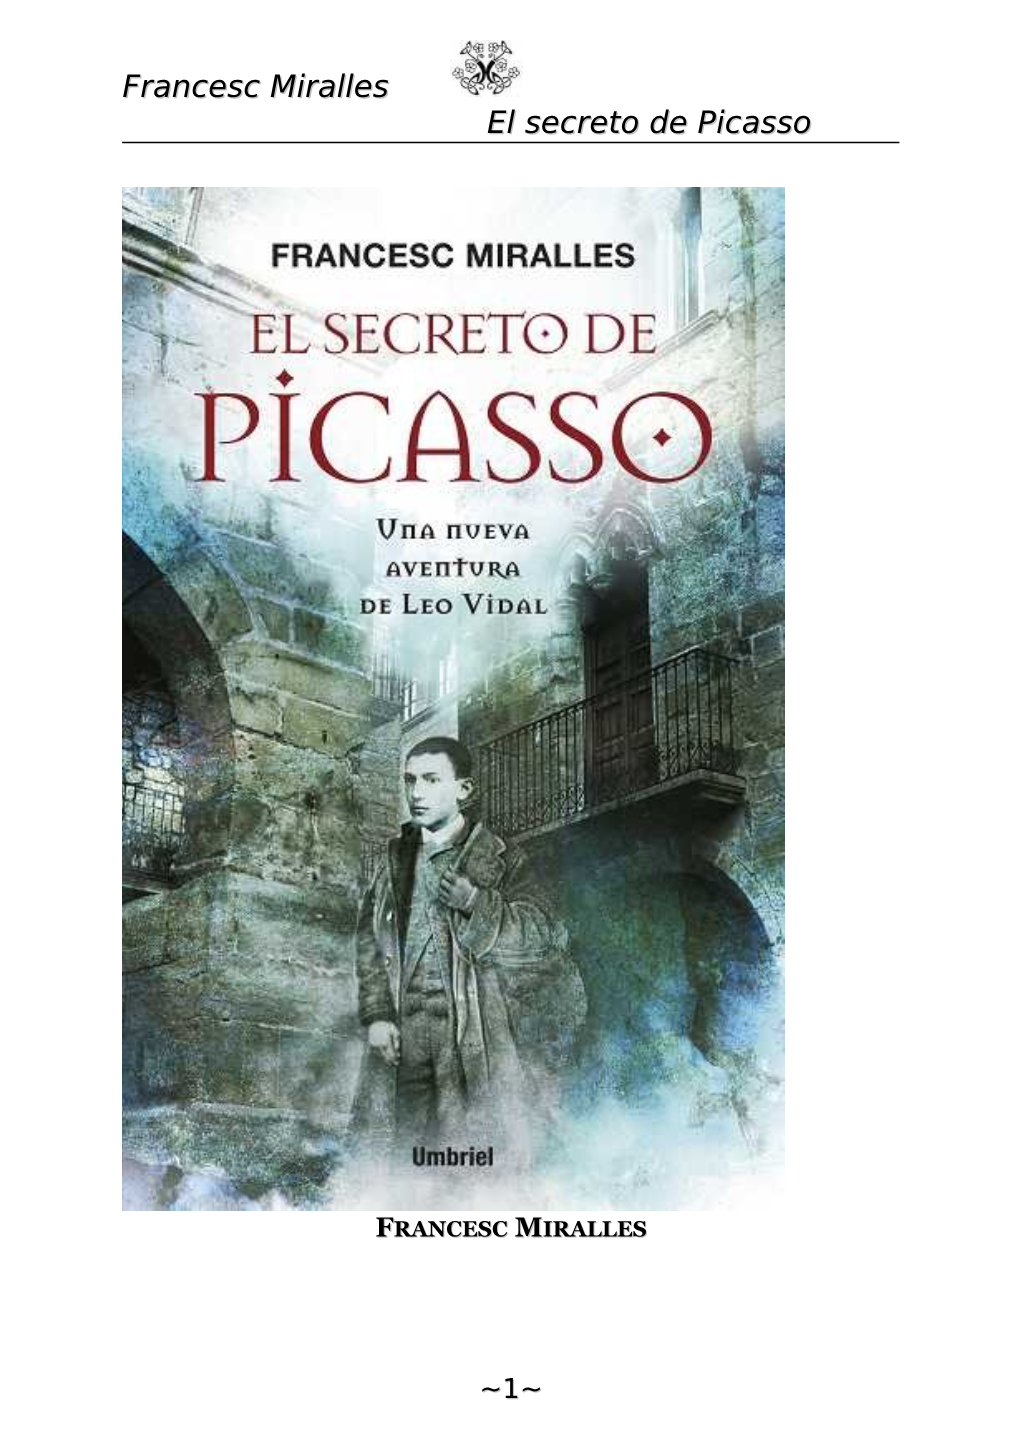 Francesc Miralles El Secreto De Picasso